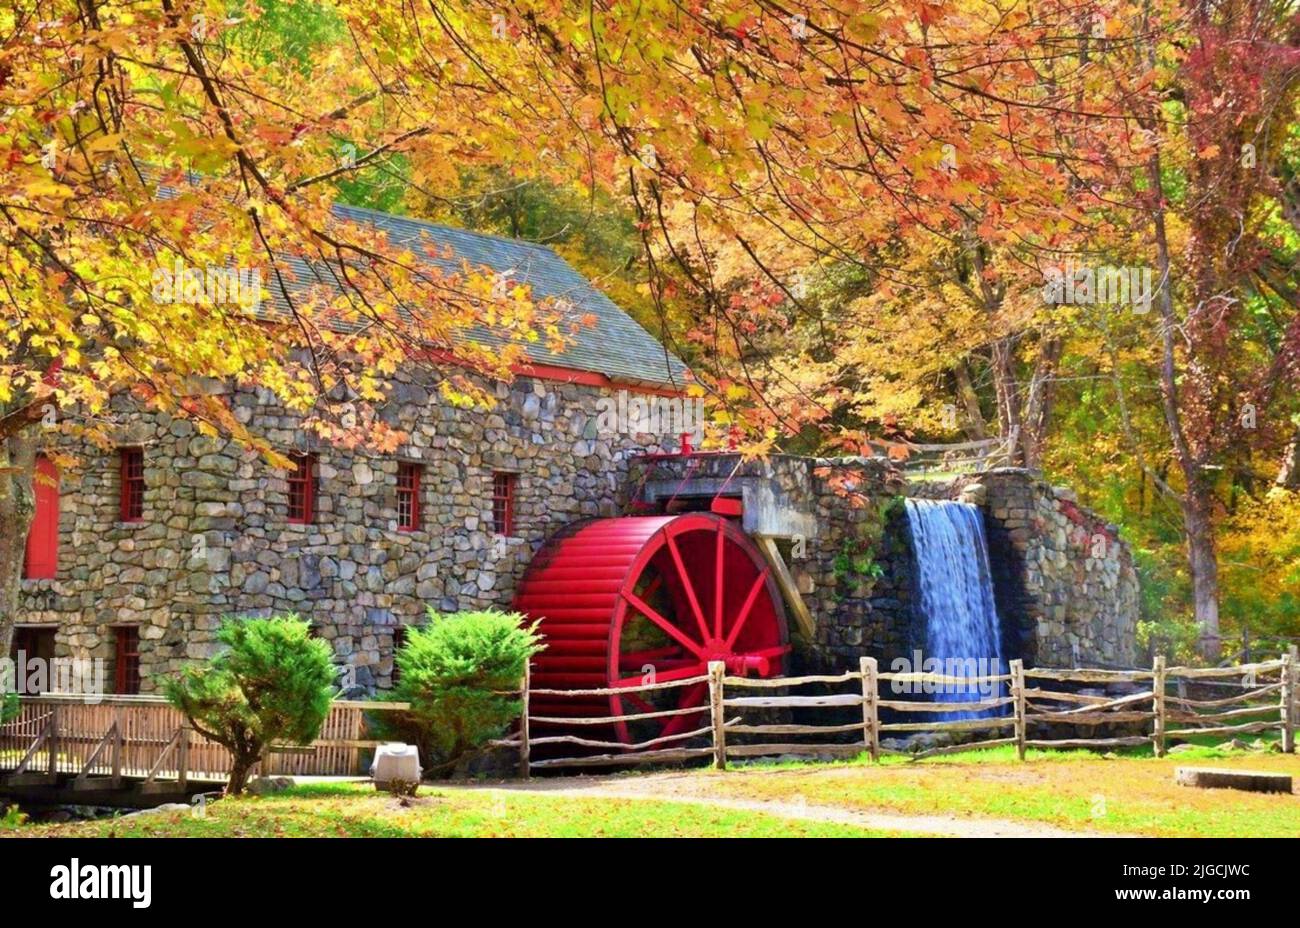 Historic Grist Mill in Sudbury, Massachusetts in Autumn Stock Photo